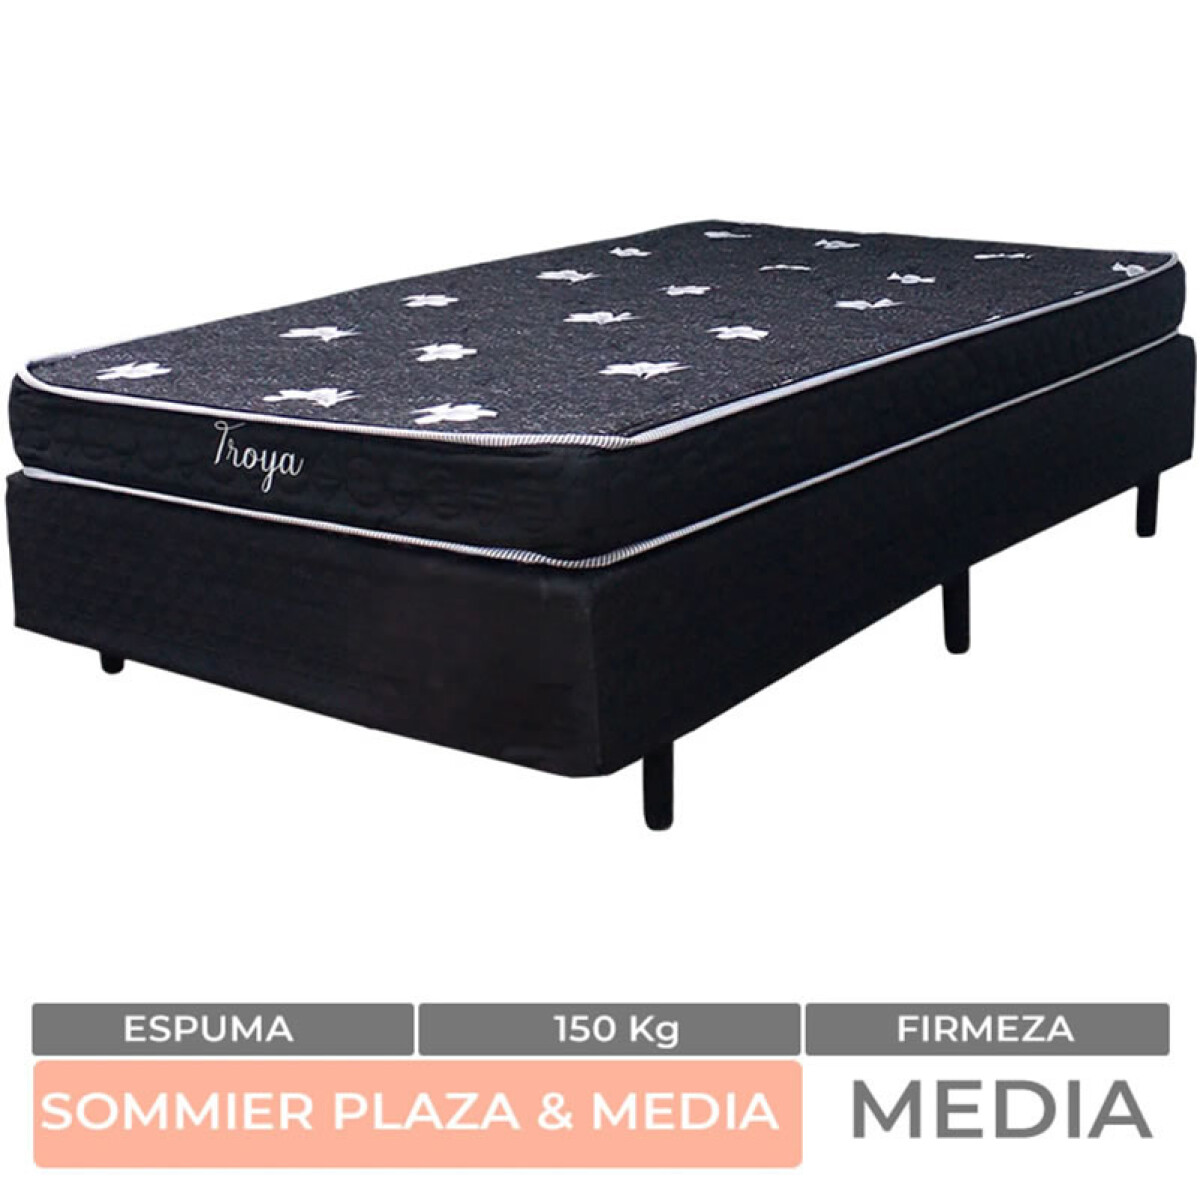 PLAZA Y MEDIA + BOX - Conjunto de Sommier Troya Espuma de plaza 1 y 1/2 Plaza 190x110x50 150K 